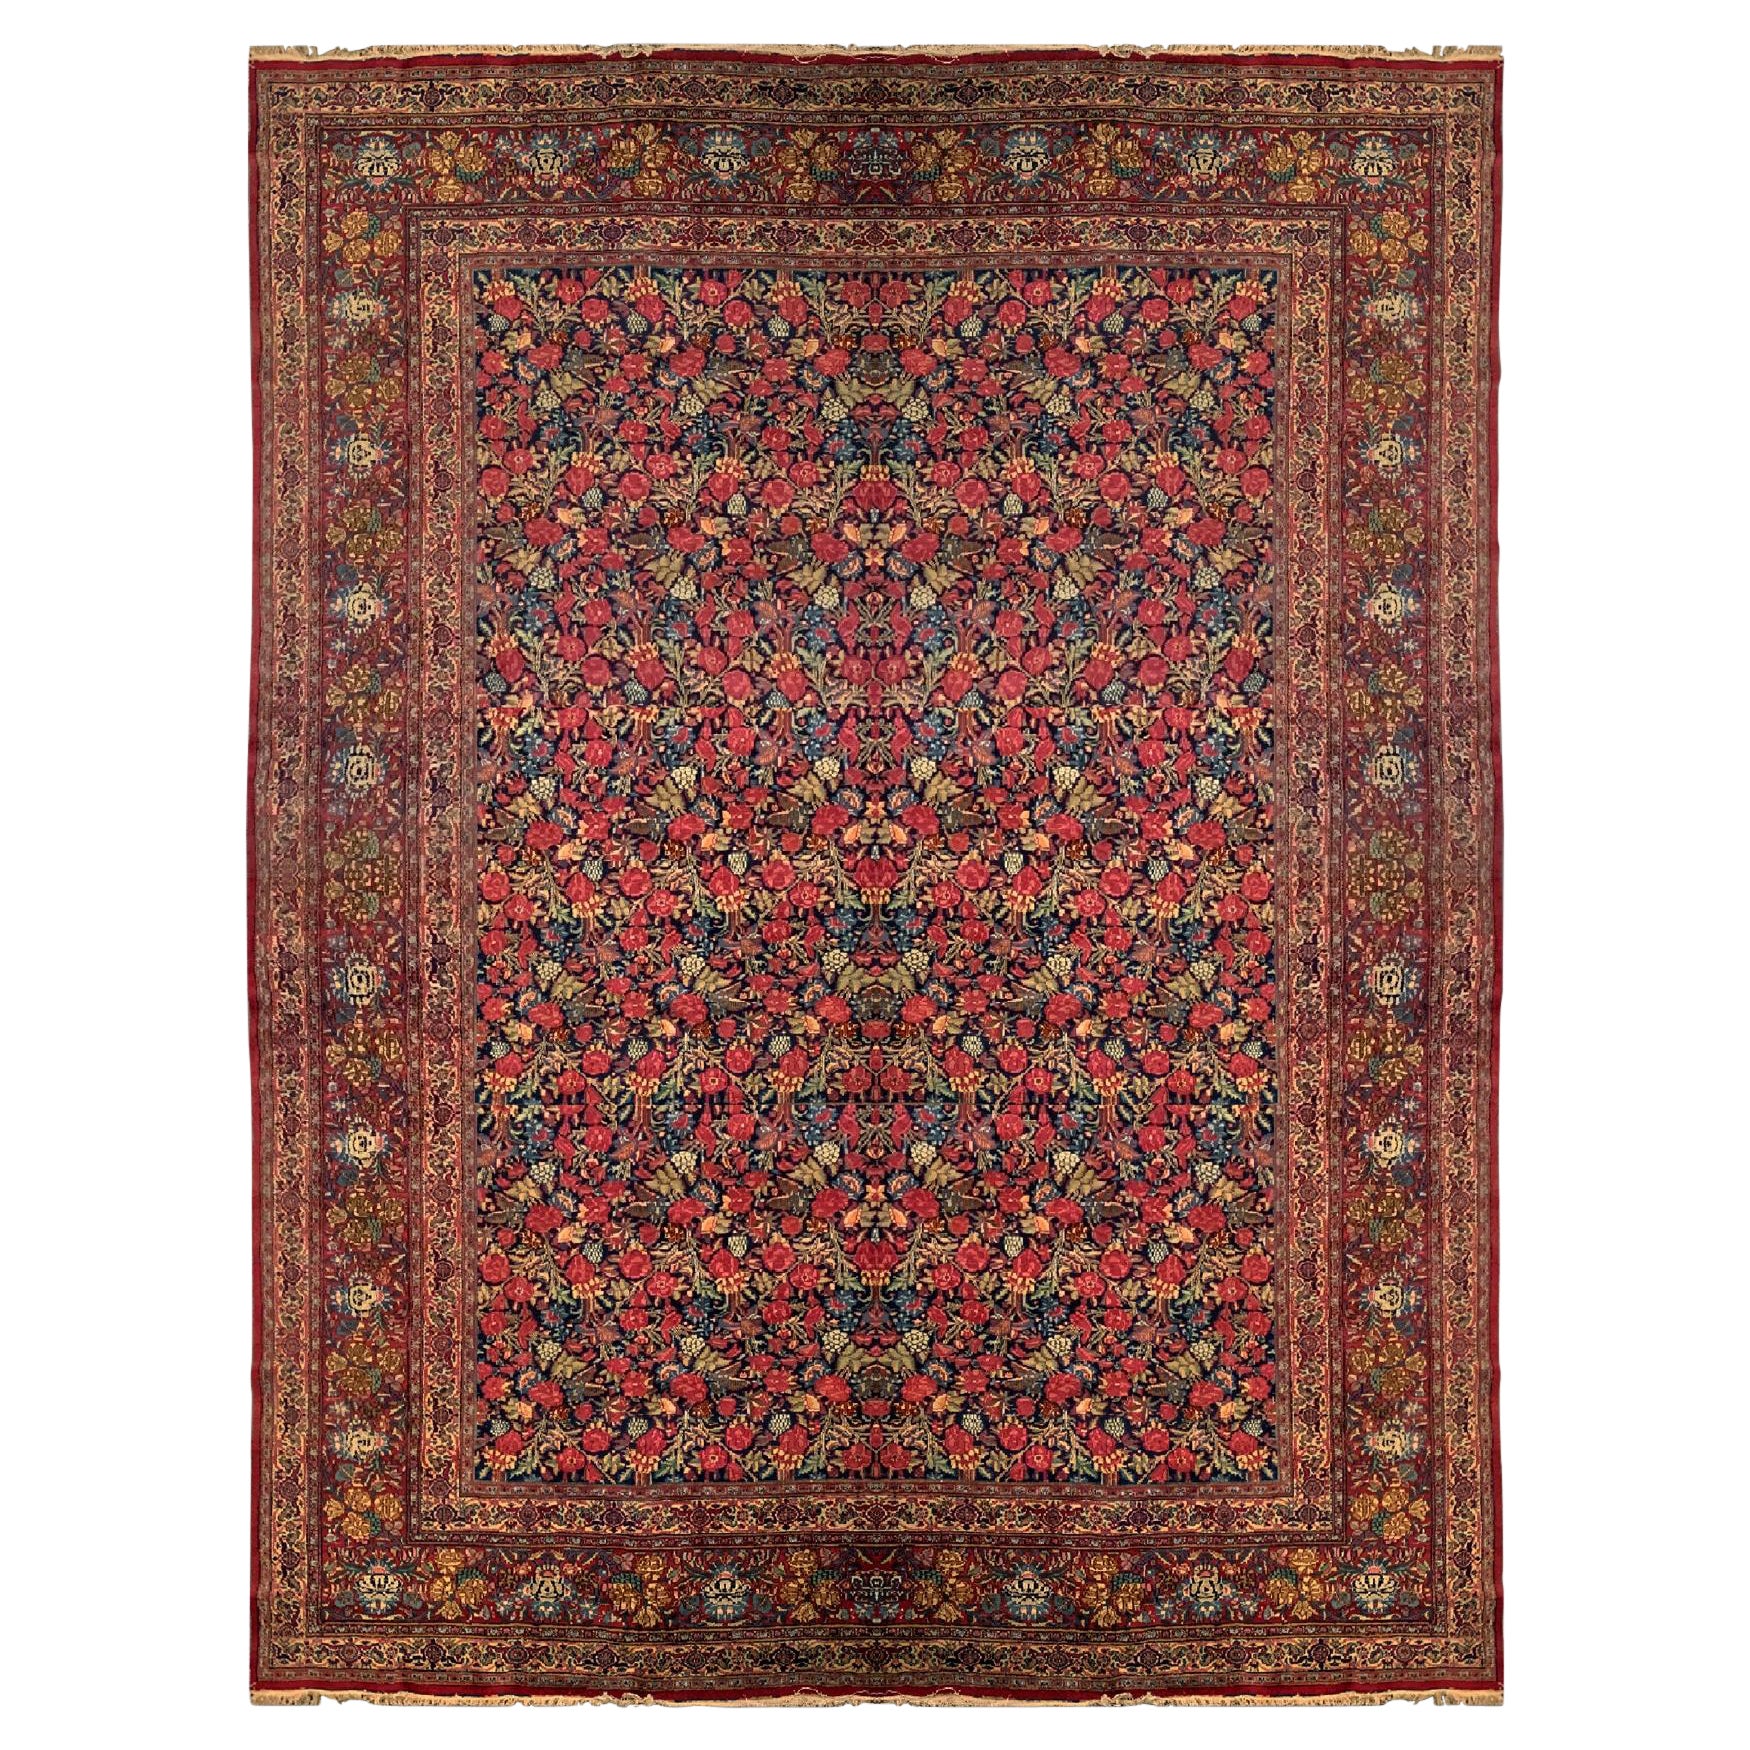 Antiker Kerman-Teppich in Übergröße, antik, geblümtes Allover-Design